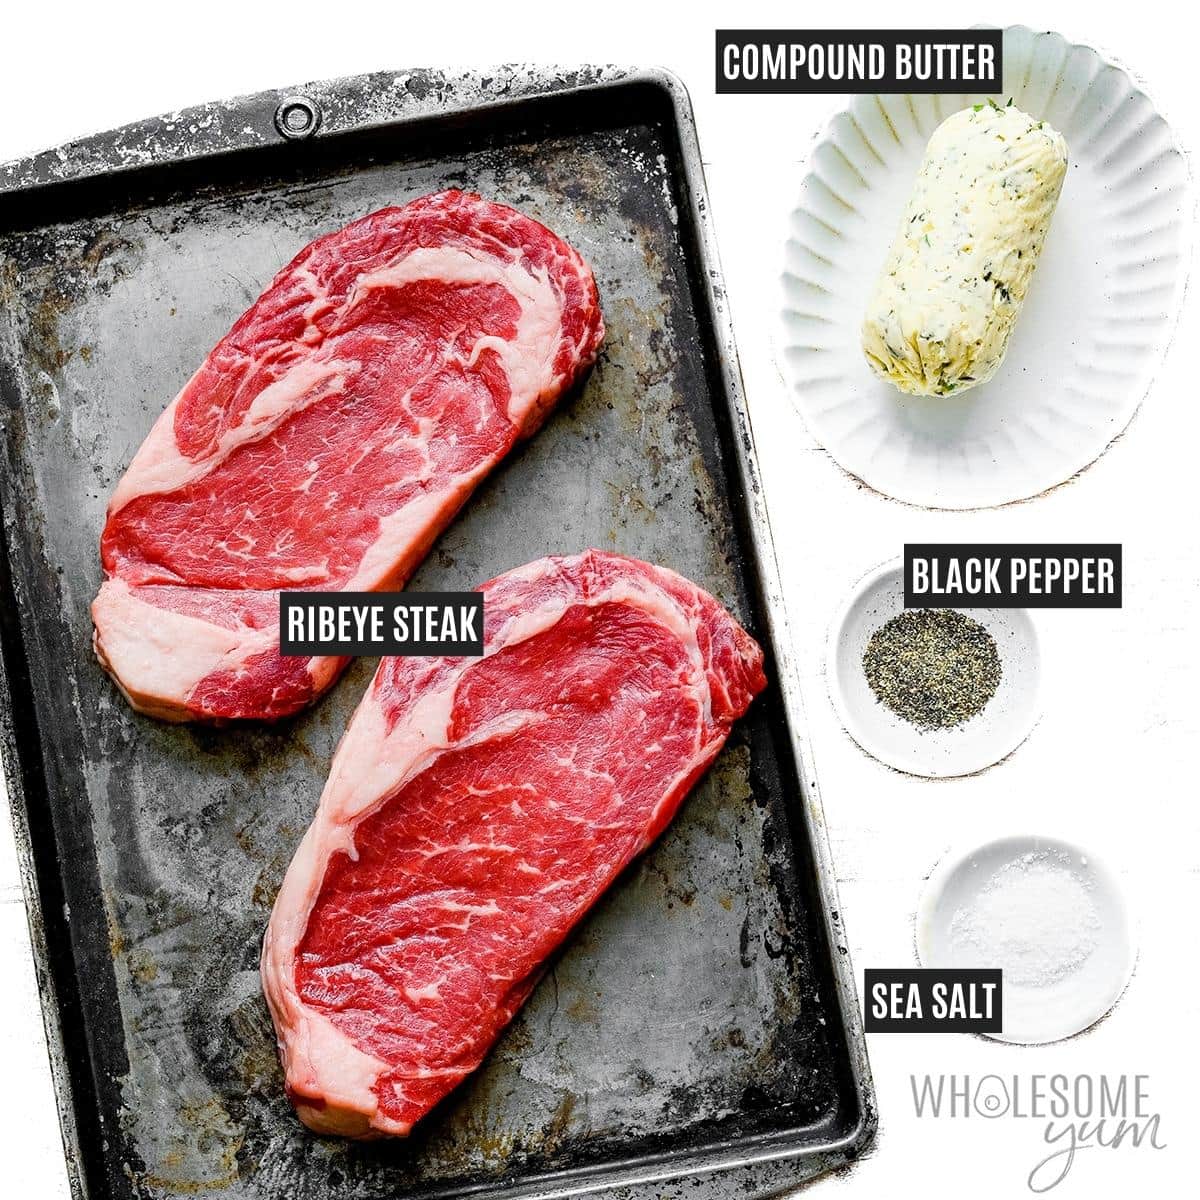 Ribeye steak recipe ingredients.